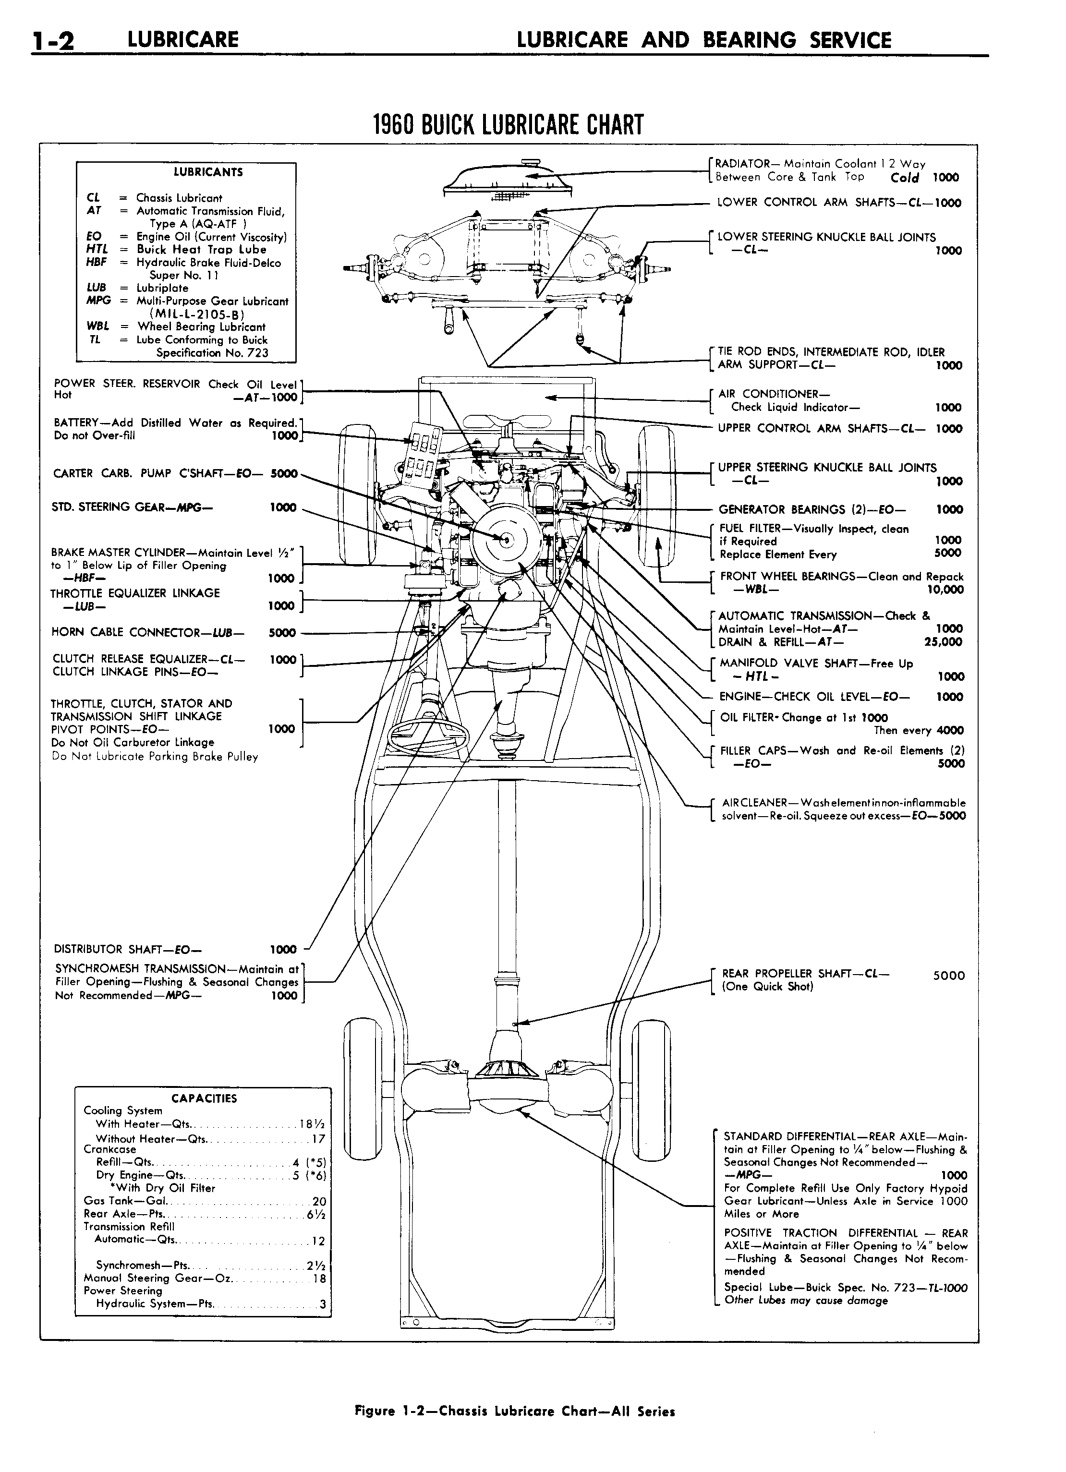 n_02 1960 Buick Shop Manual - Lubricare-002-002.jpg